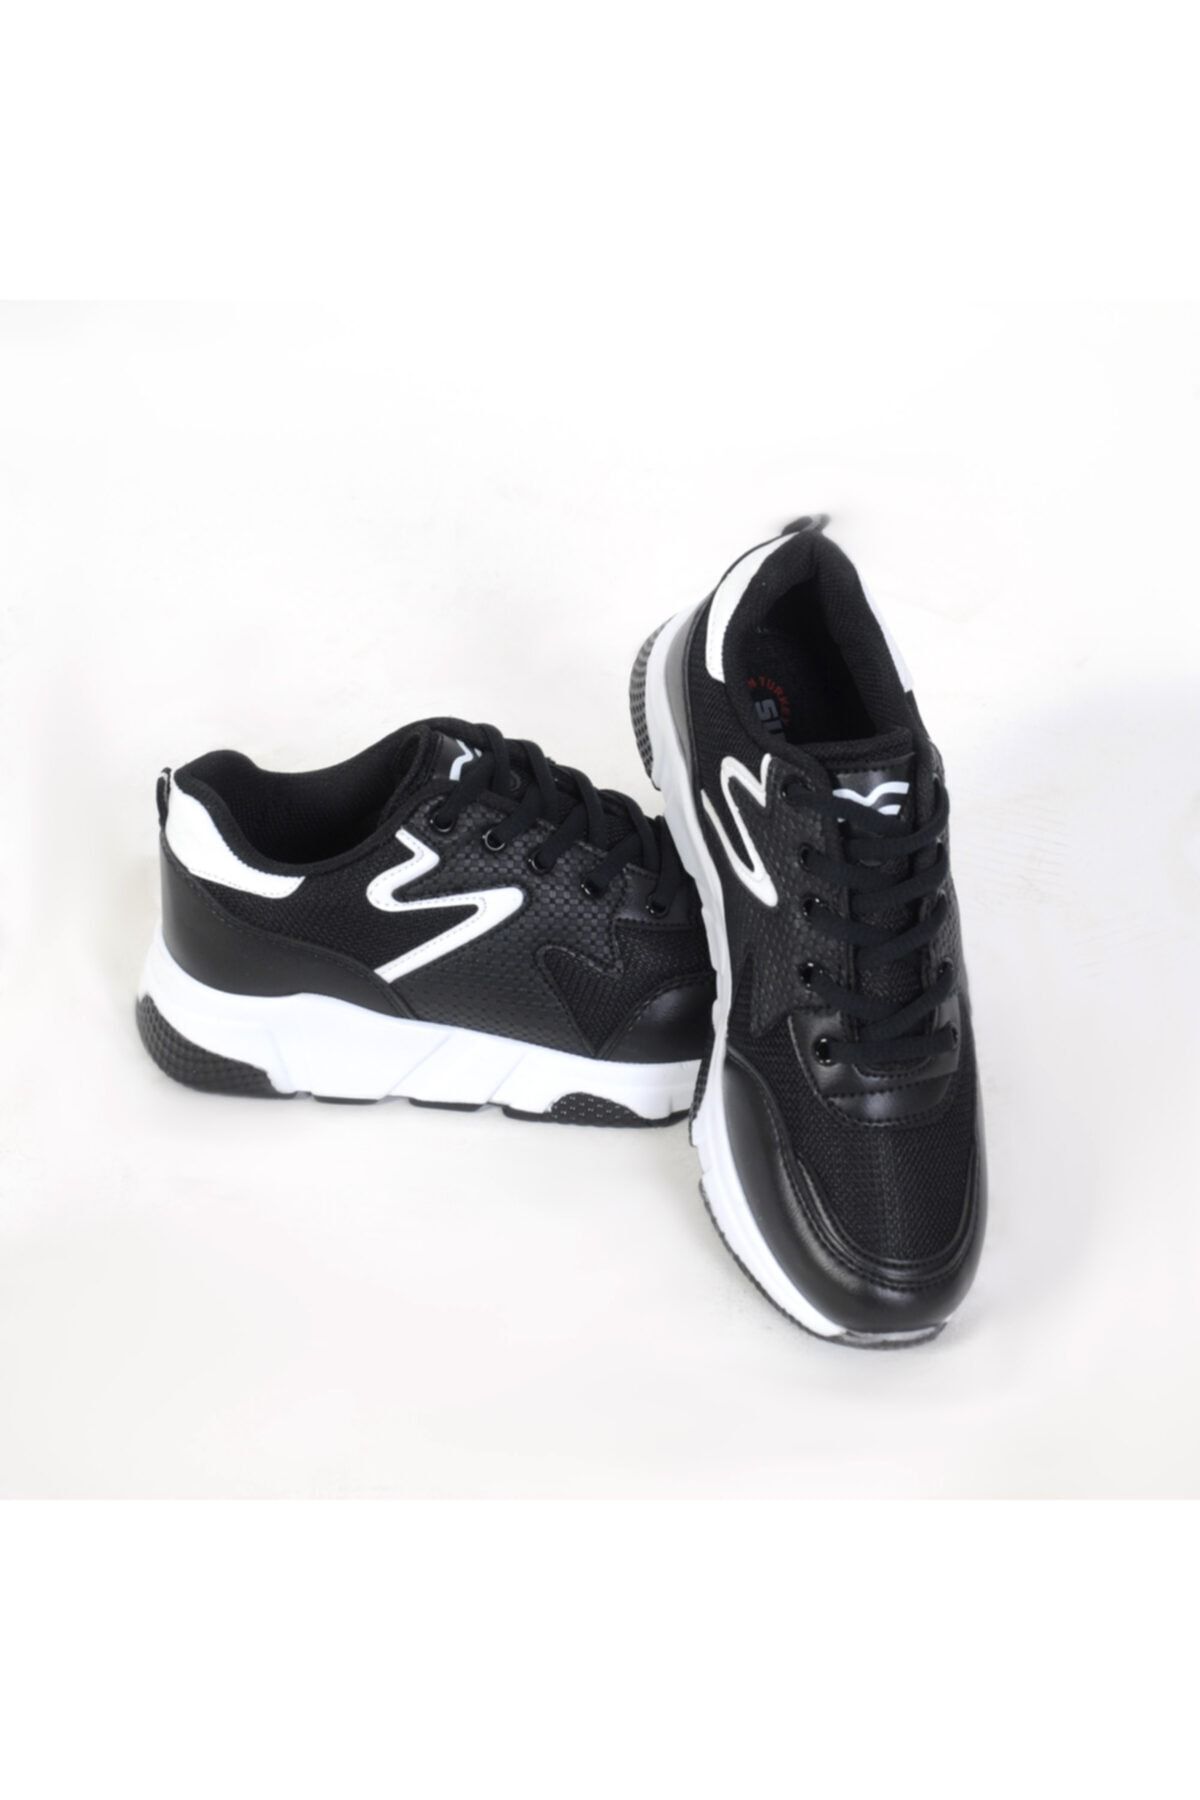 Sidasa 437 Bağlı Siyah-beyaz Anoraklı Spor Ayakkabı